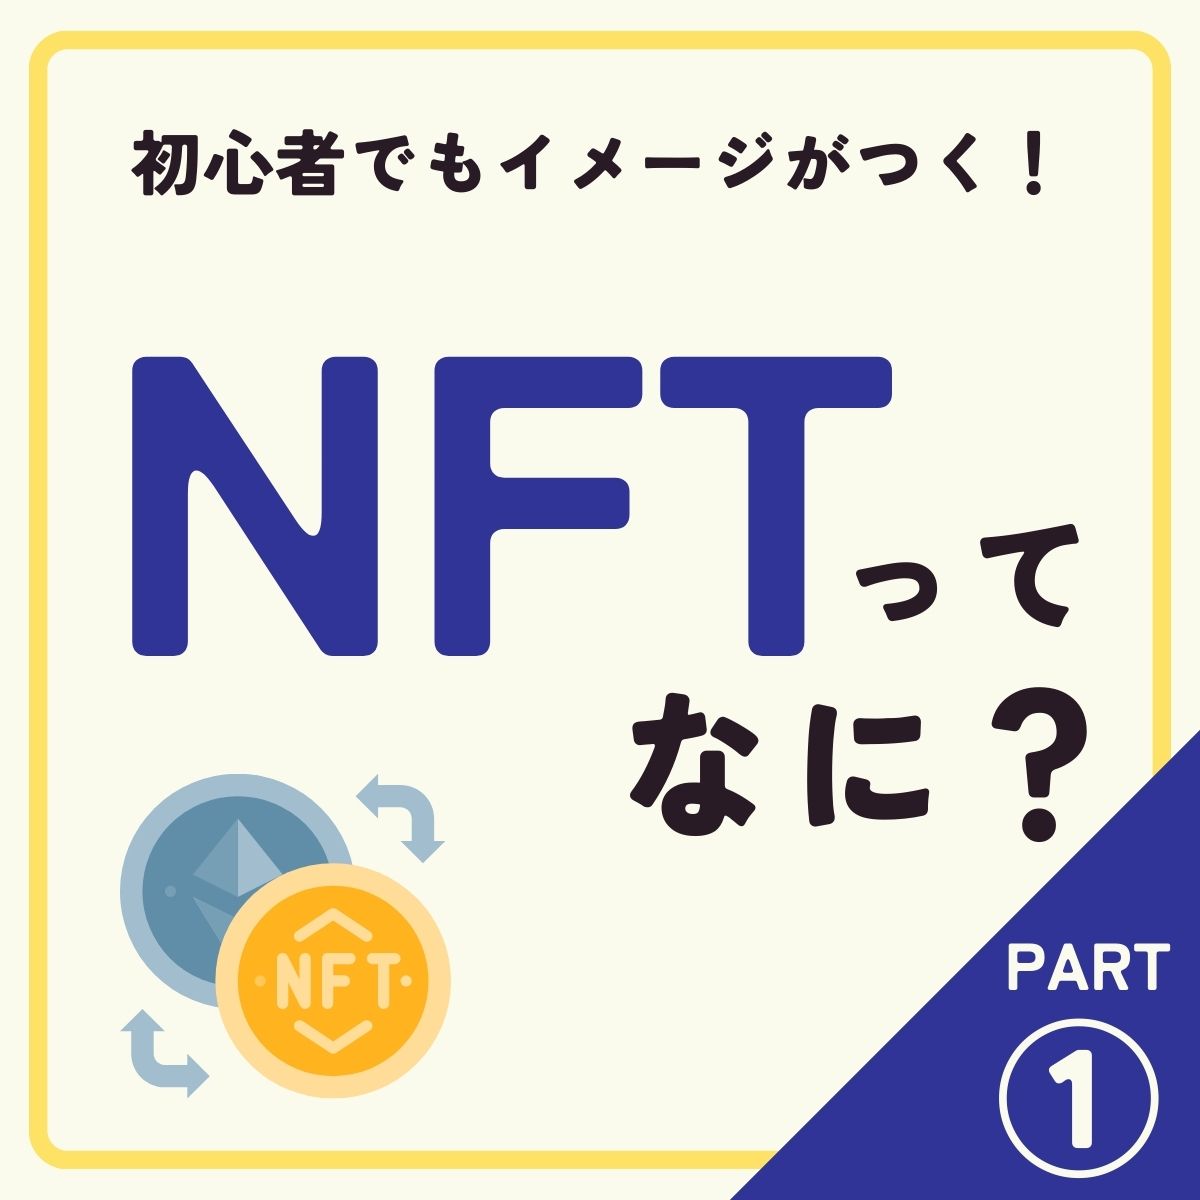 NFT始めようかなって方へ

chatなんちゃらに聞かなくても
答えをココに置いておきます

つまりコレです。
 #図解  #NFT 